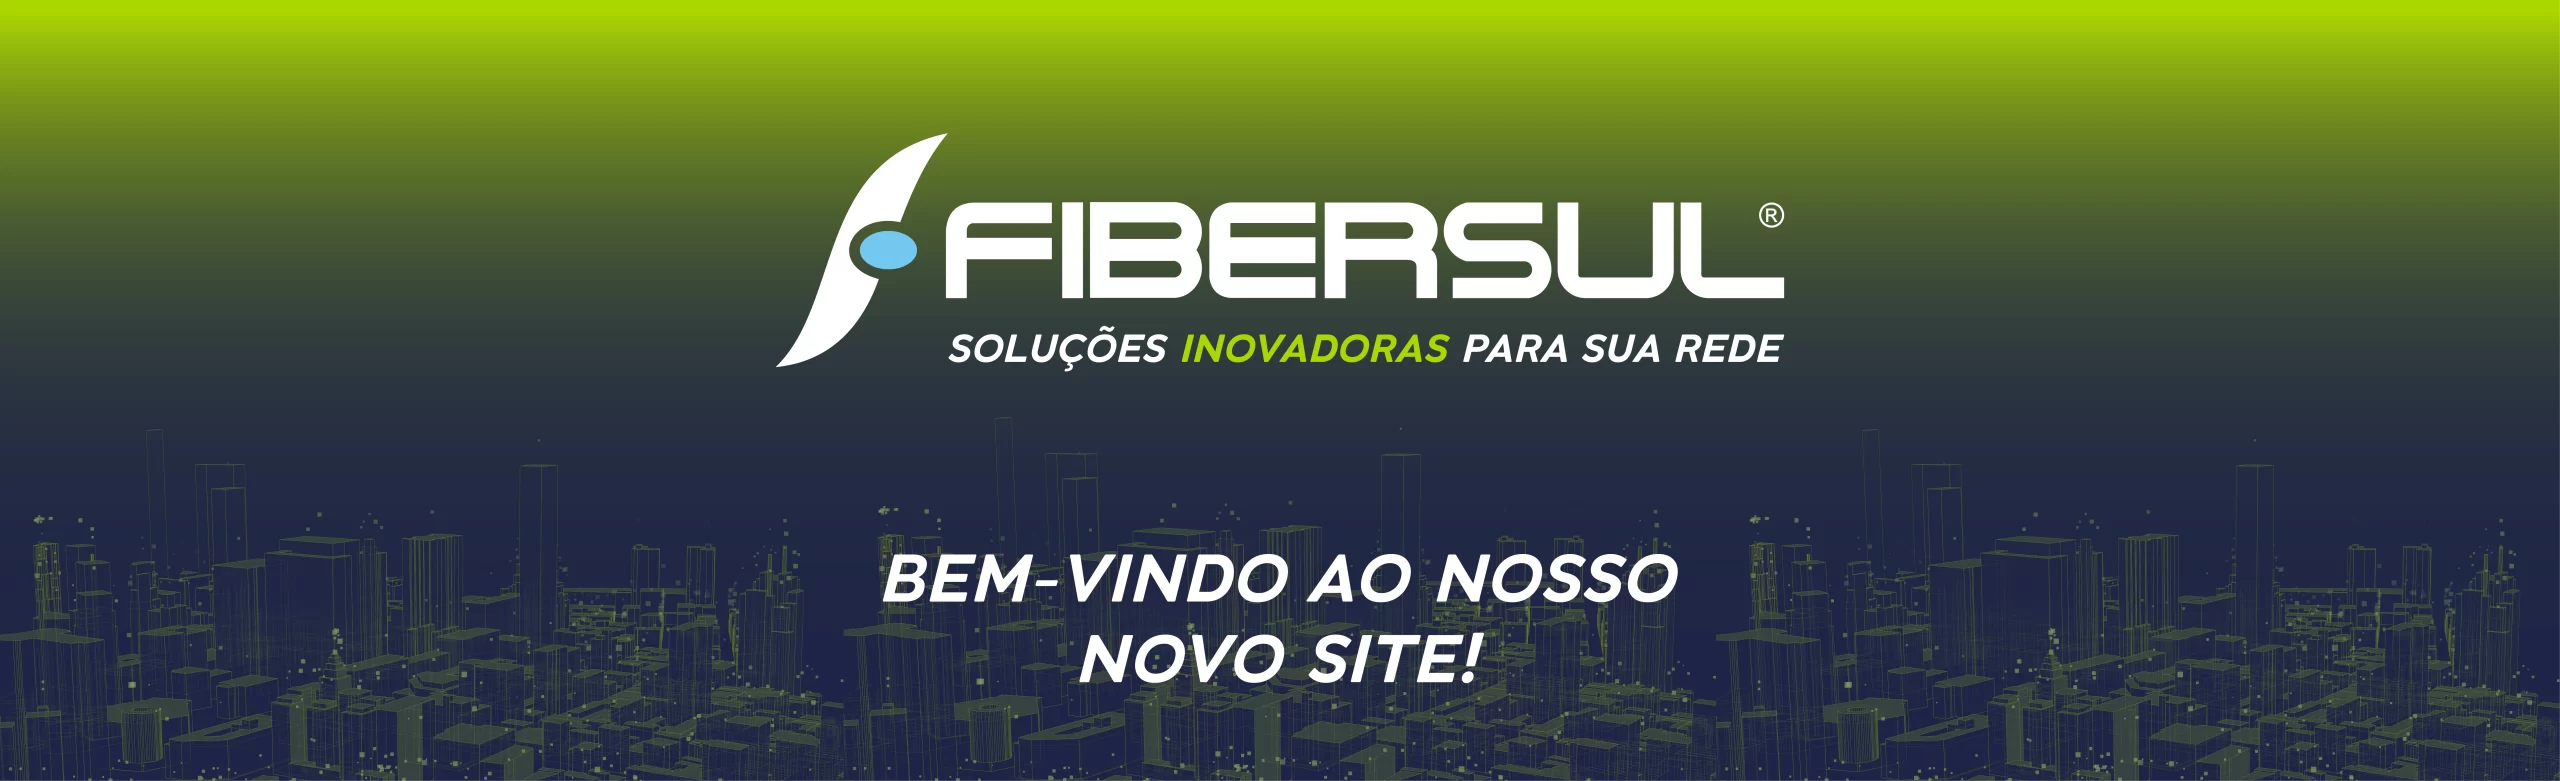 Seja bem-vindo ao novo site da Fibersul